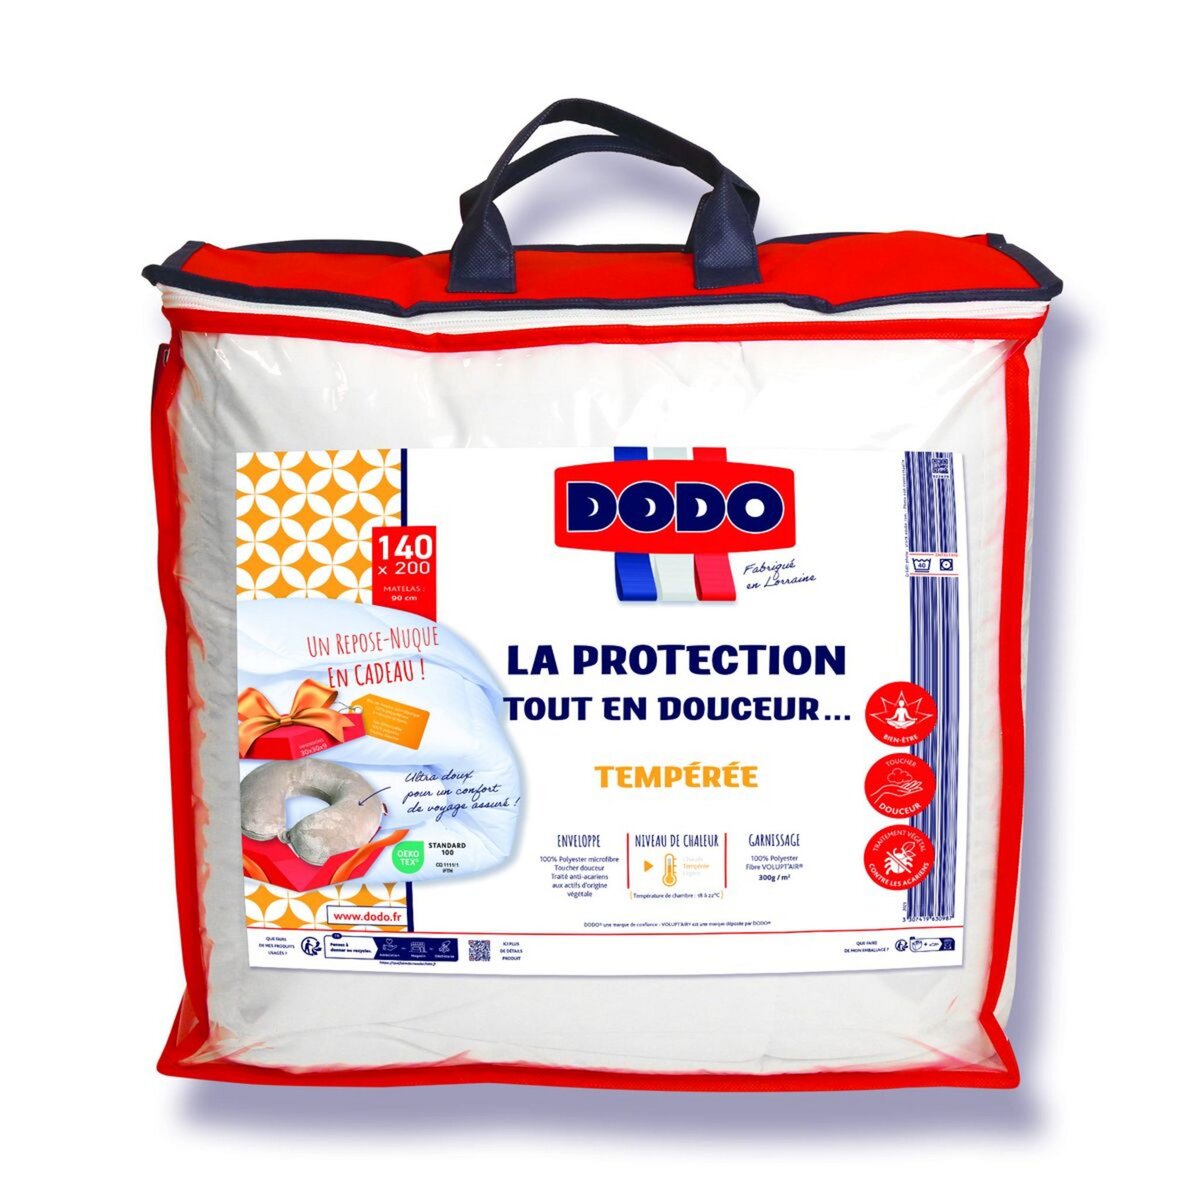 Couette tempérée DODO 140x200 cm - 1 personne - Protection anti punaise,  anti acarien - 300G/m² - Blanc - Fabriqué